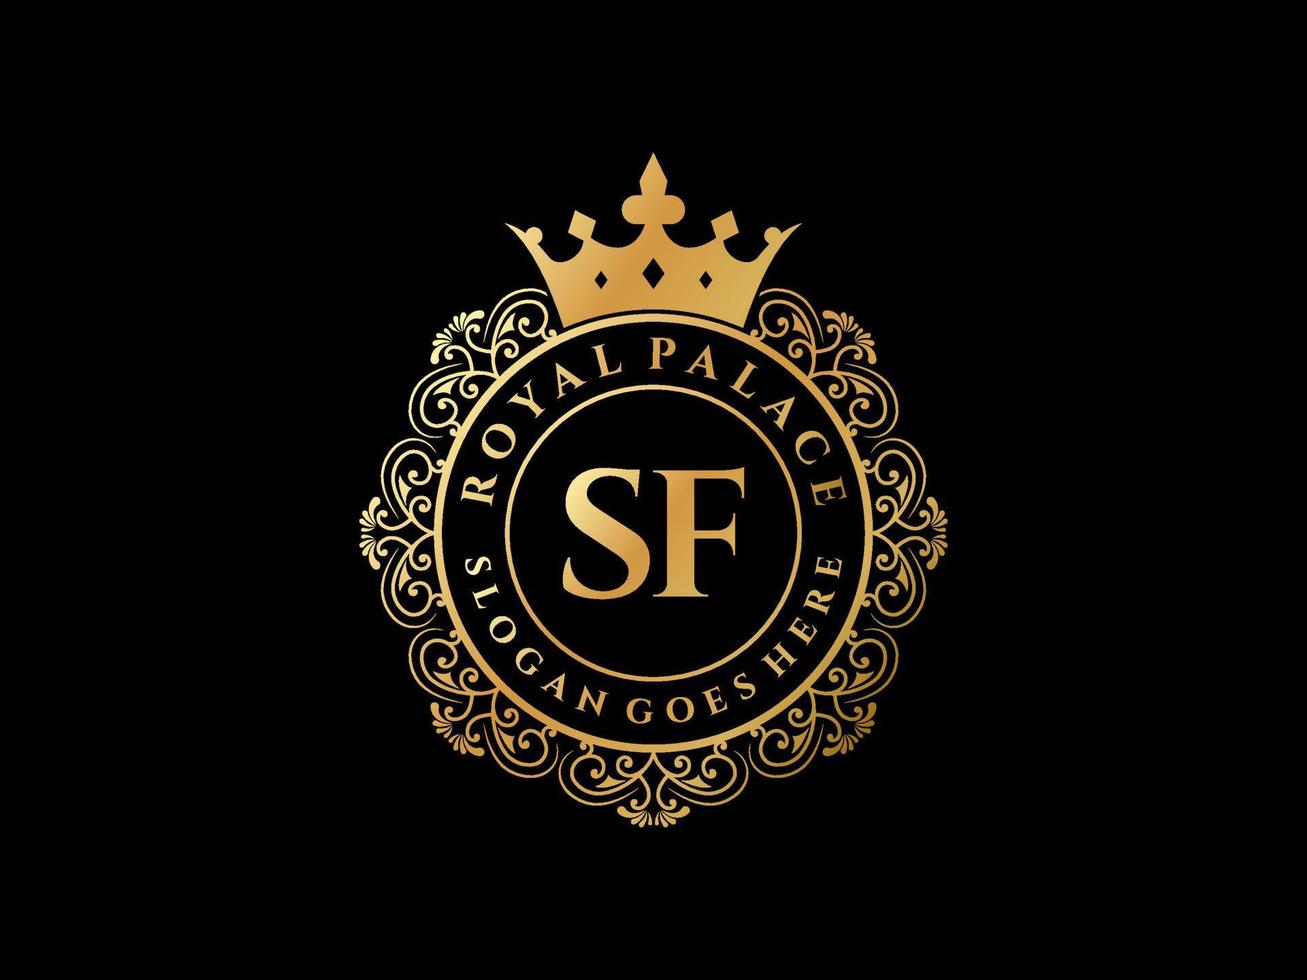 lettre sf logo victorien de luxe royal antique avec cadre ornemental. vecteur